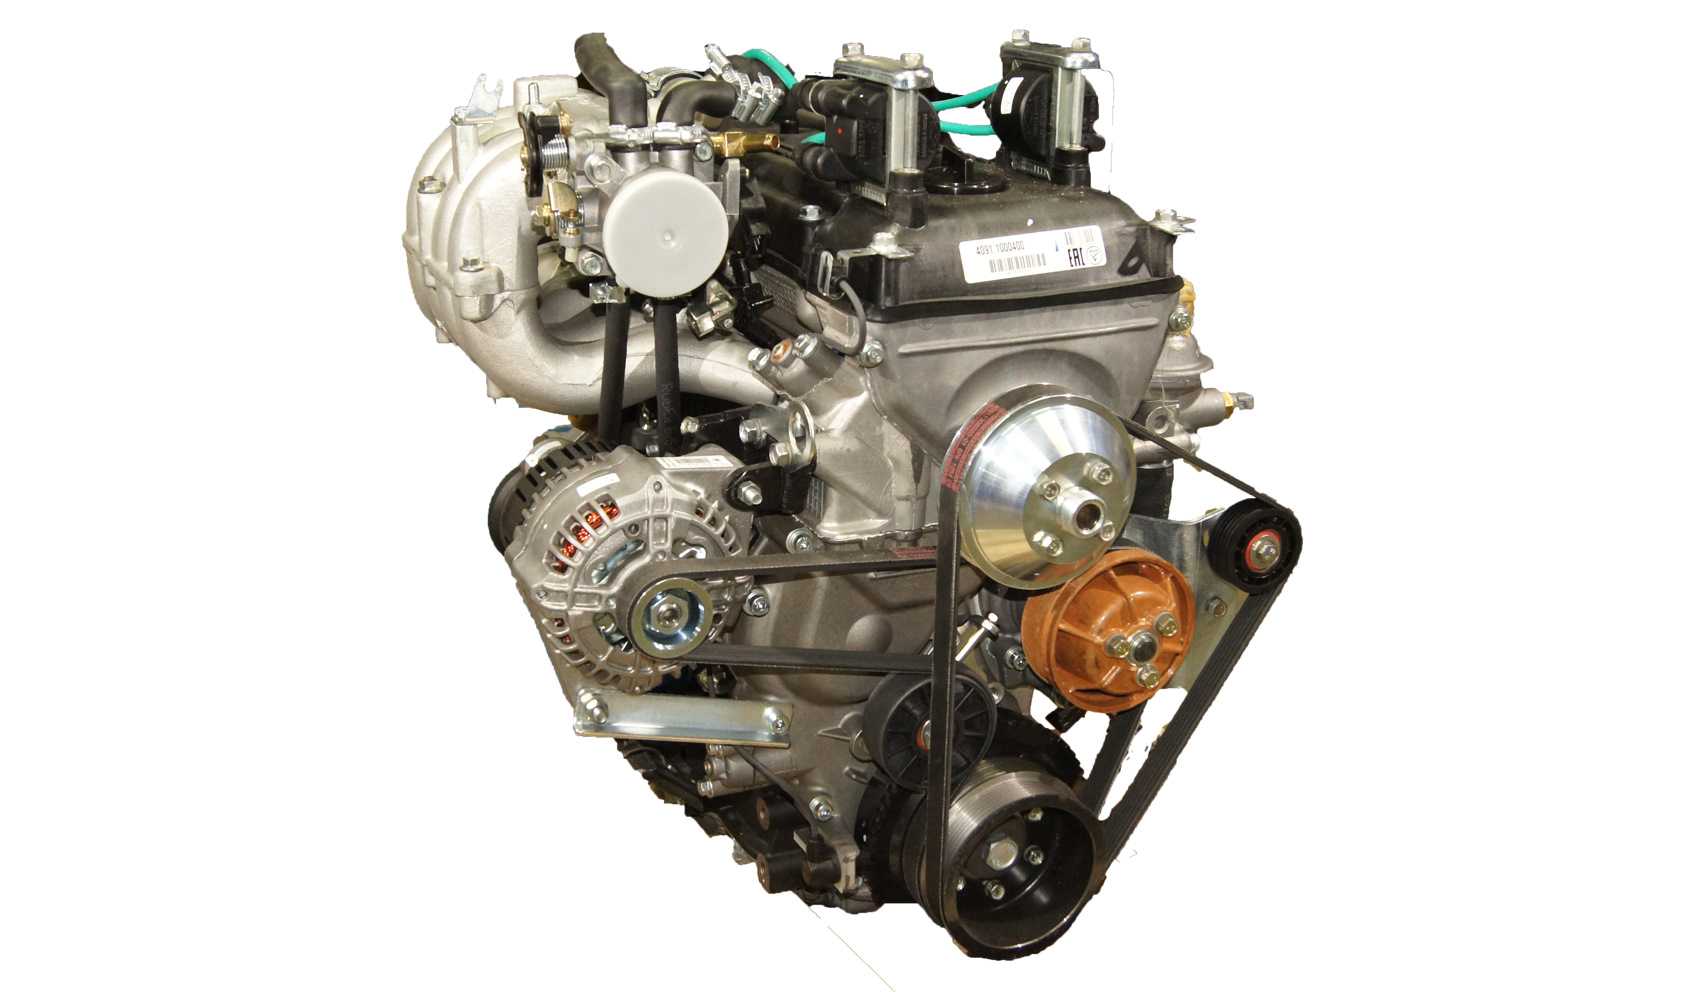 Двигатель змз 409 газ, уаз, технические характеристики, какое масло лить, ремонт двигателя змз 409, доработки и тюнинг, схема устройства, рекомендации по обслуживанию